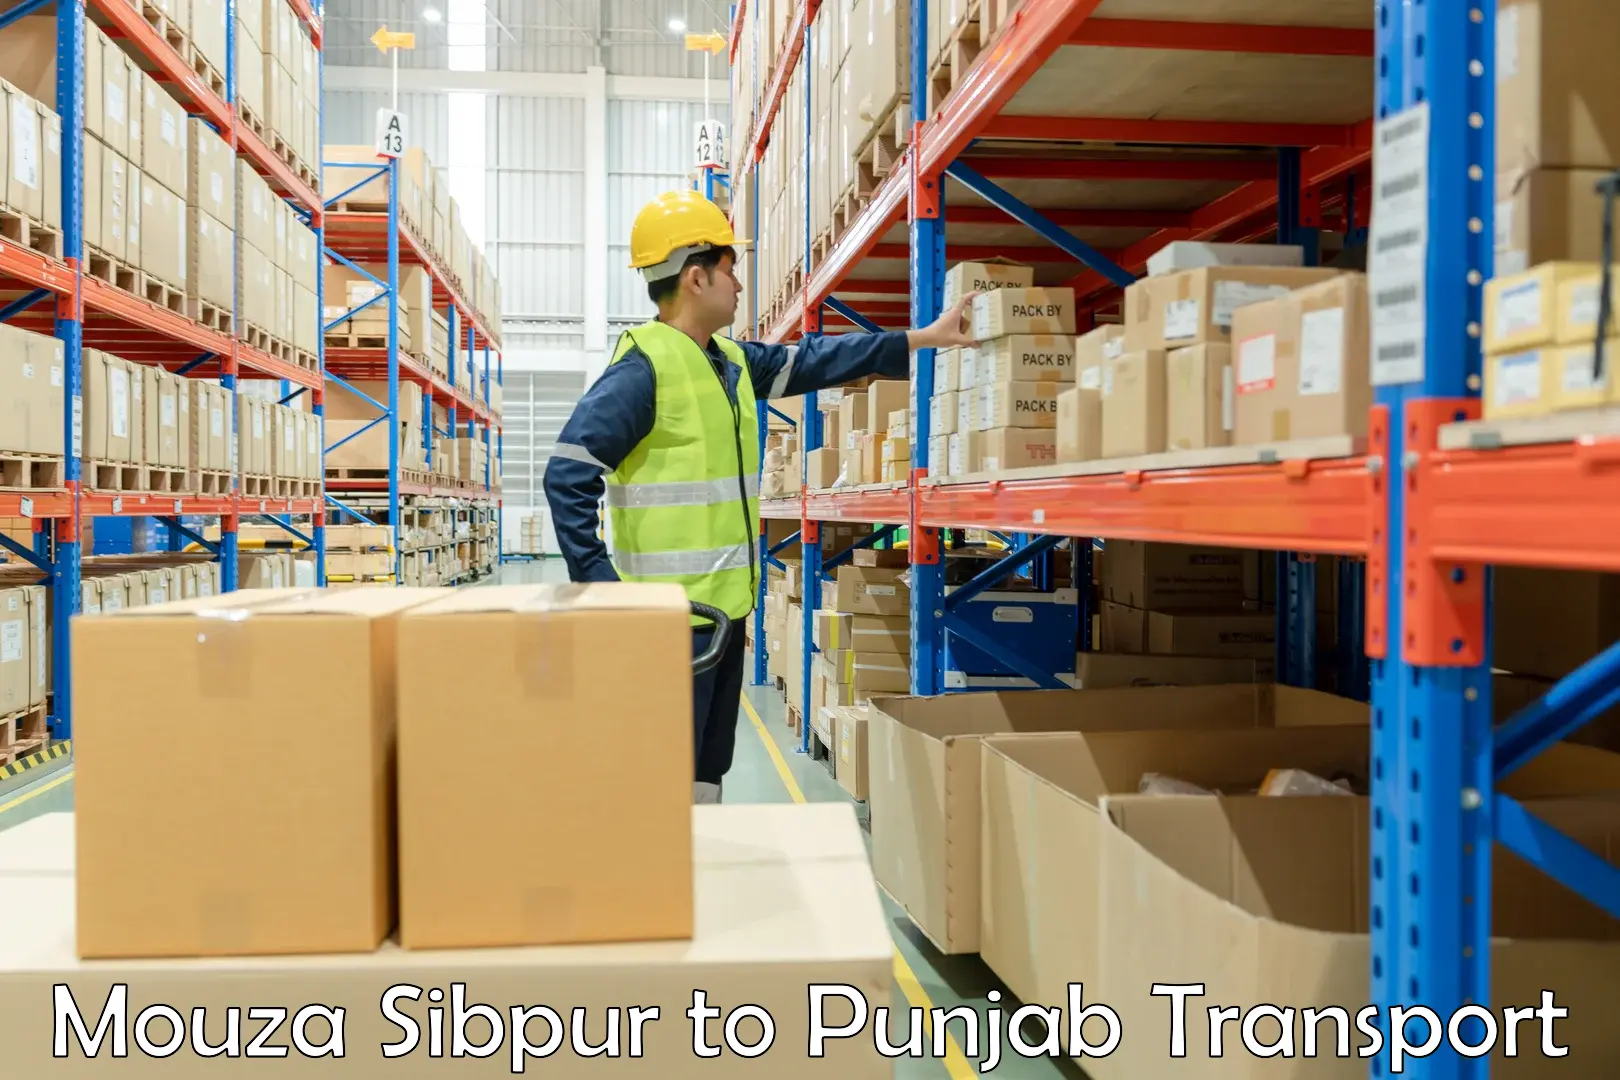 Pick up transport service Mouza Sibpur to Faridkot